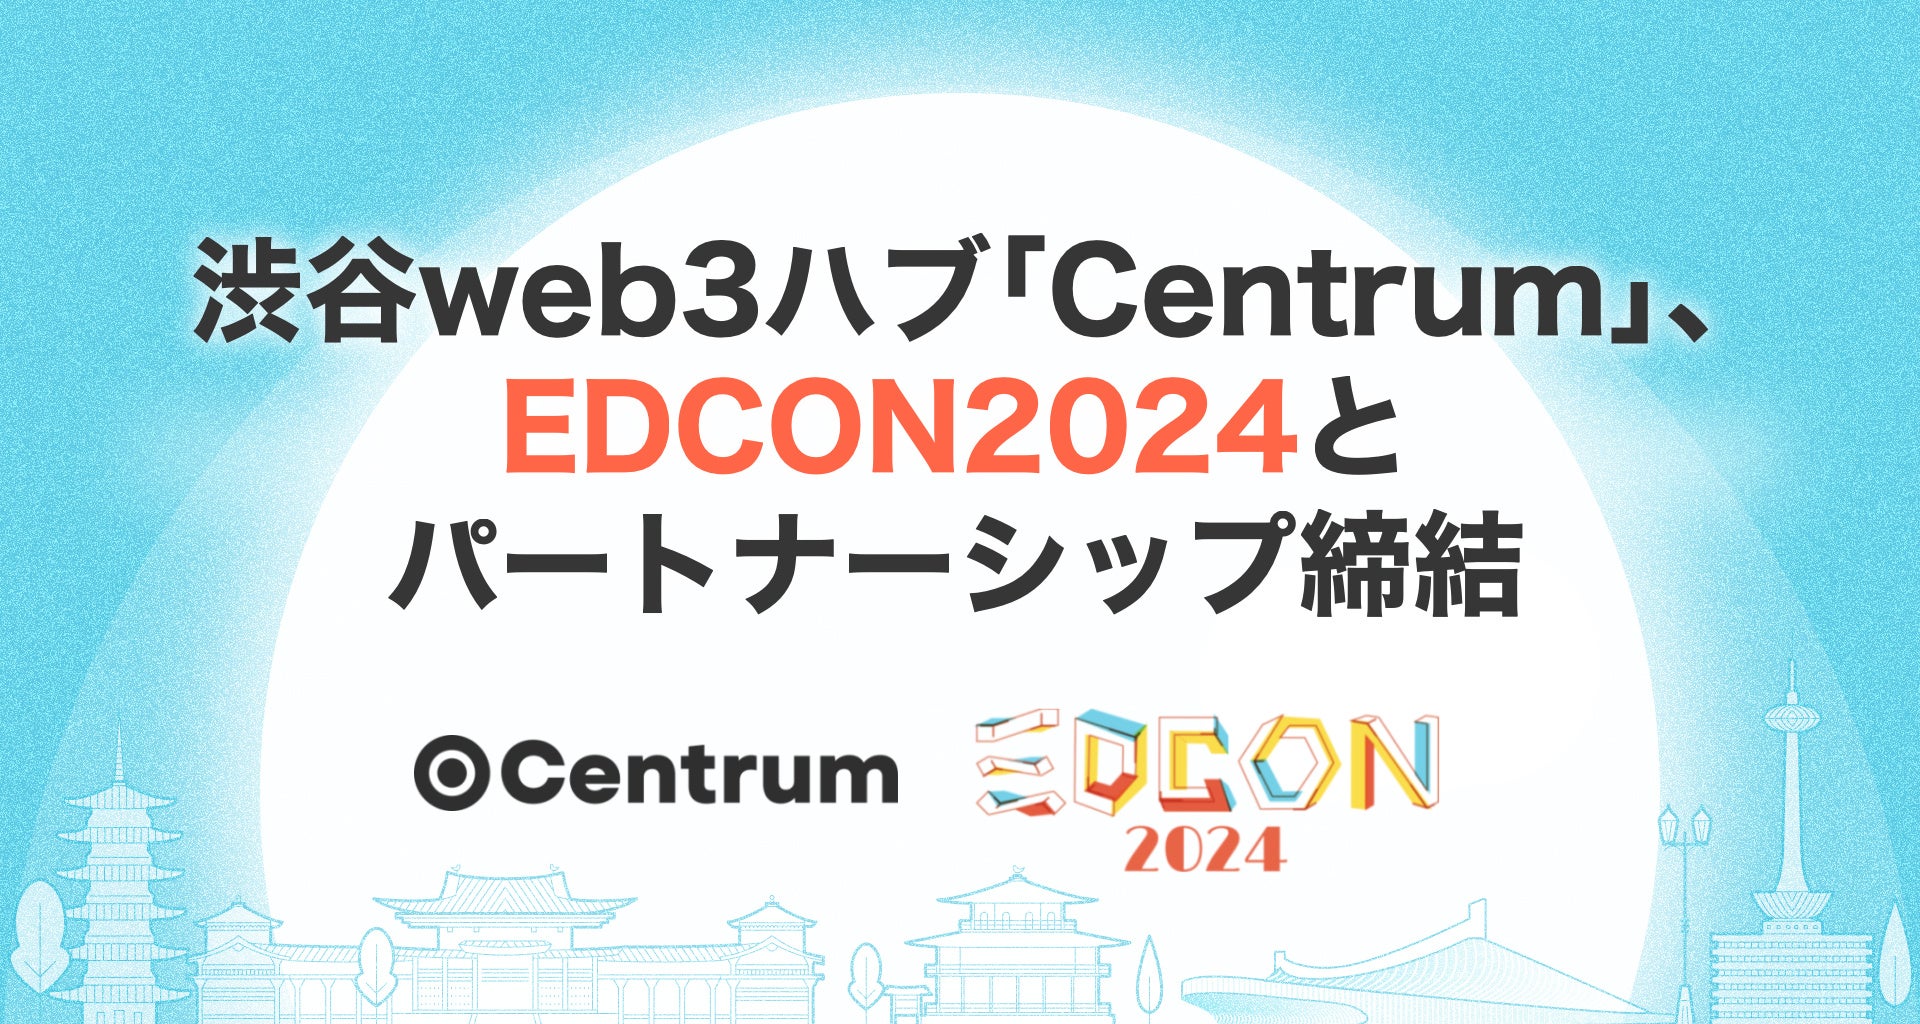 渋谷web3ハブ「Centrum」、世界最大規模のイーサリアムコミュニティ開発者カンファレンス「EDCON2024」とパー...